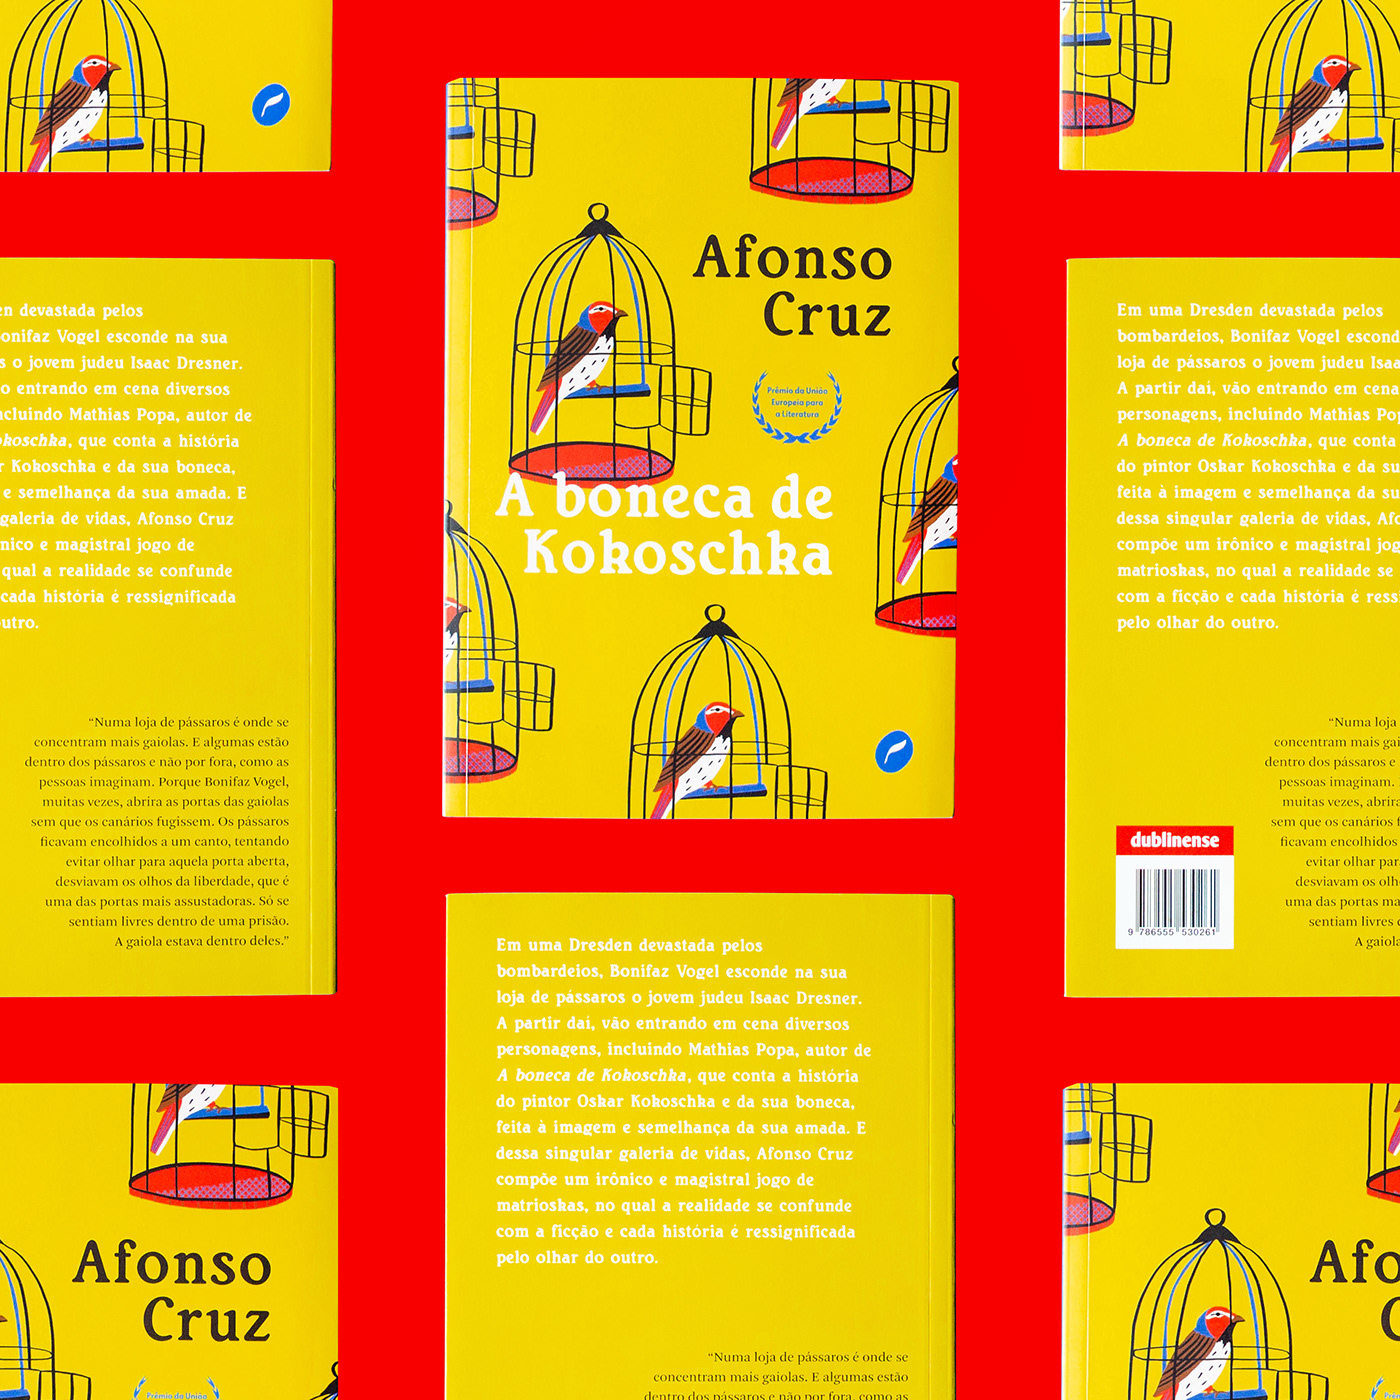 Afonso Cruz Baleia book cover book design capa de livro colorful book design design kokoschka passarinho